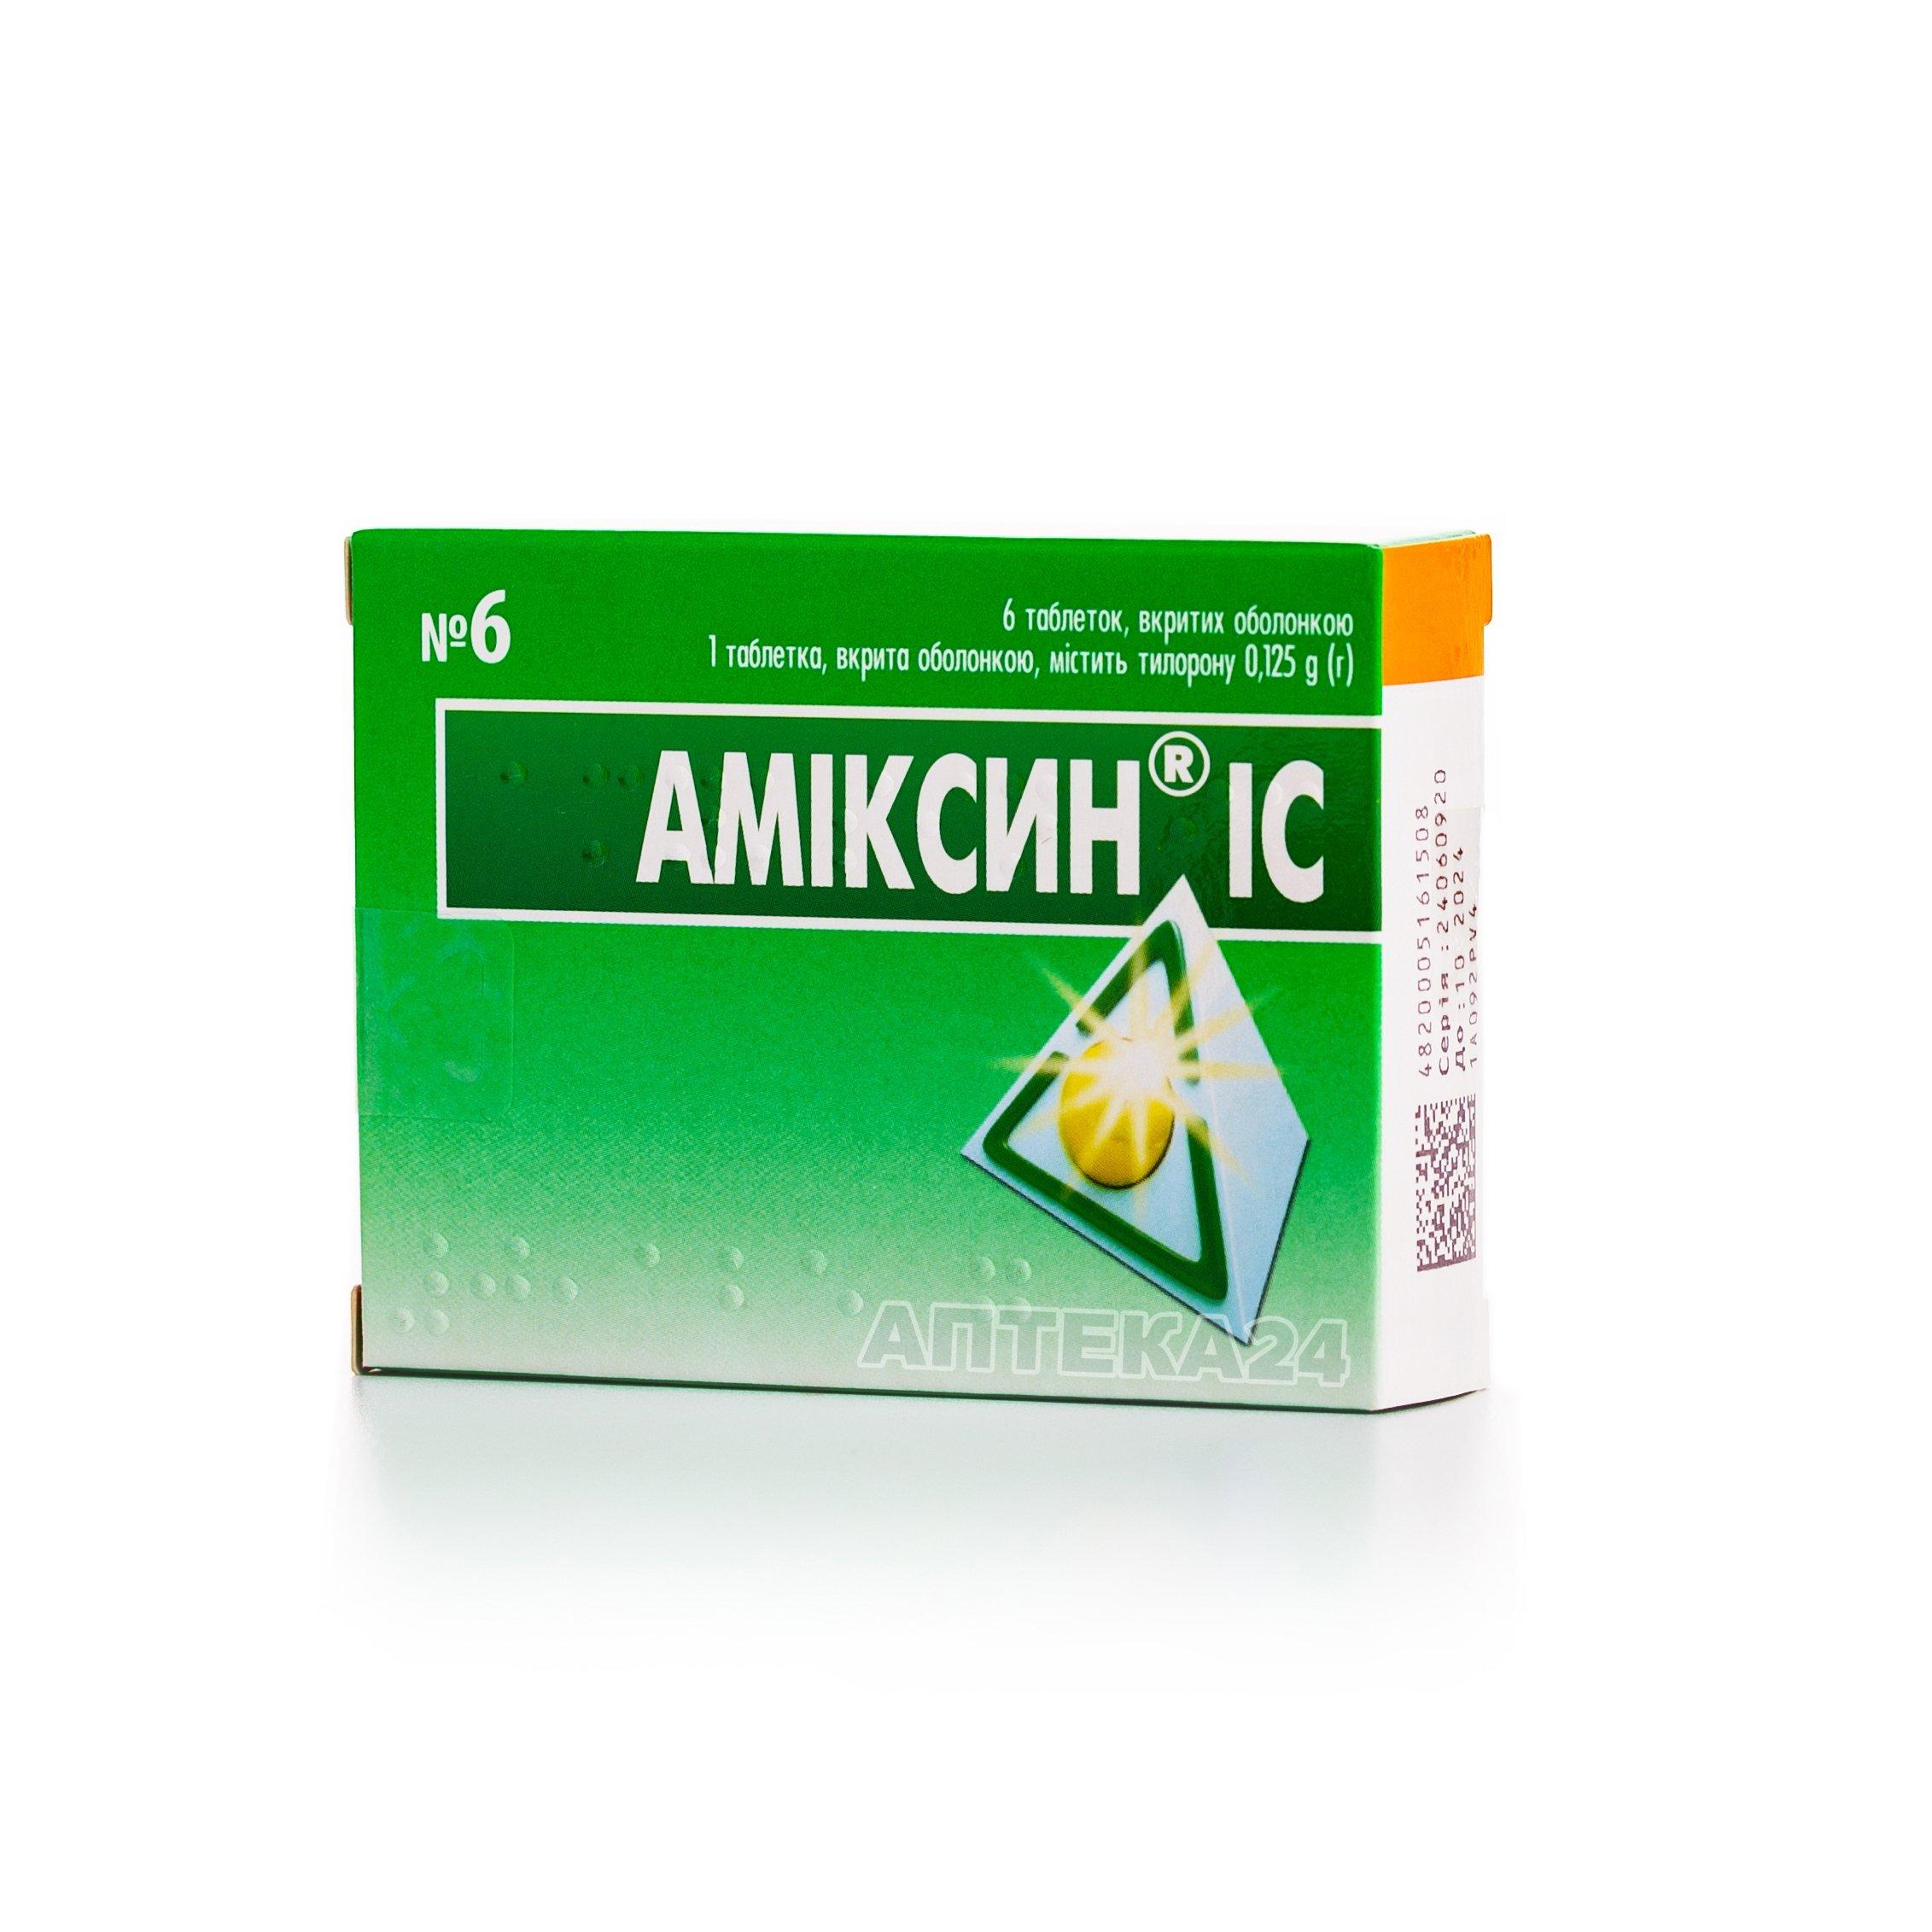 Амиксин® IC таблетки 0.125 г N6_6005b5f68e370.jpeg